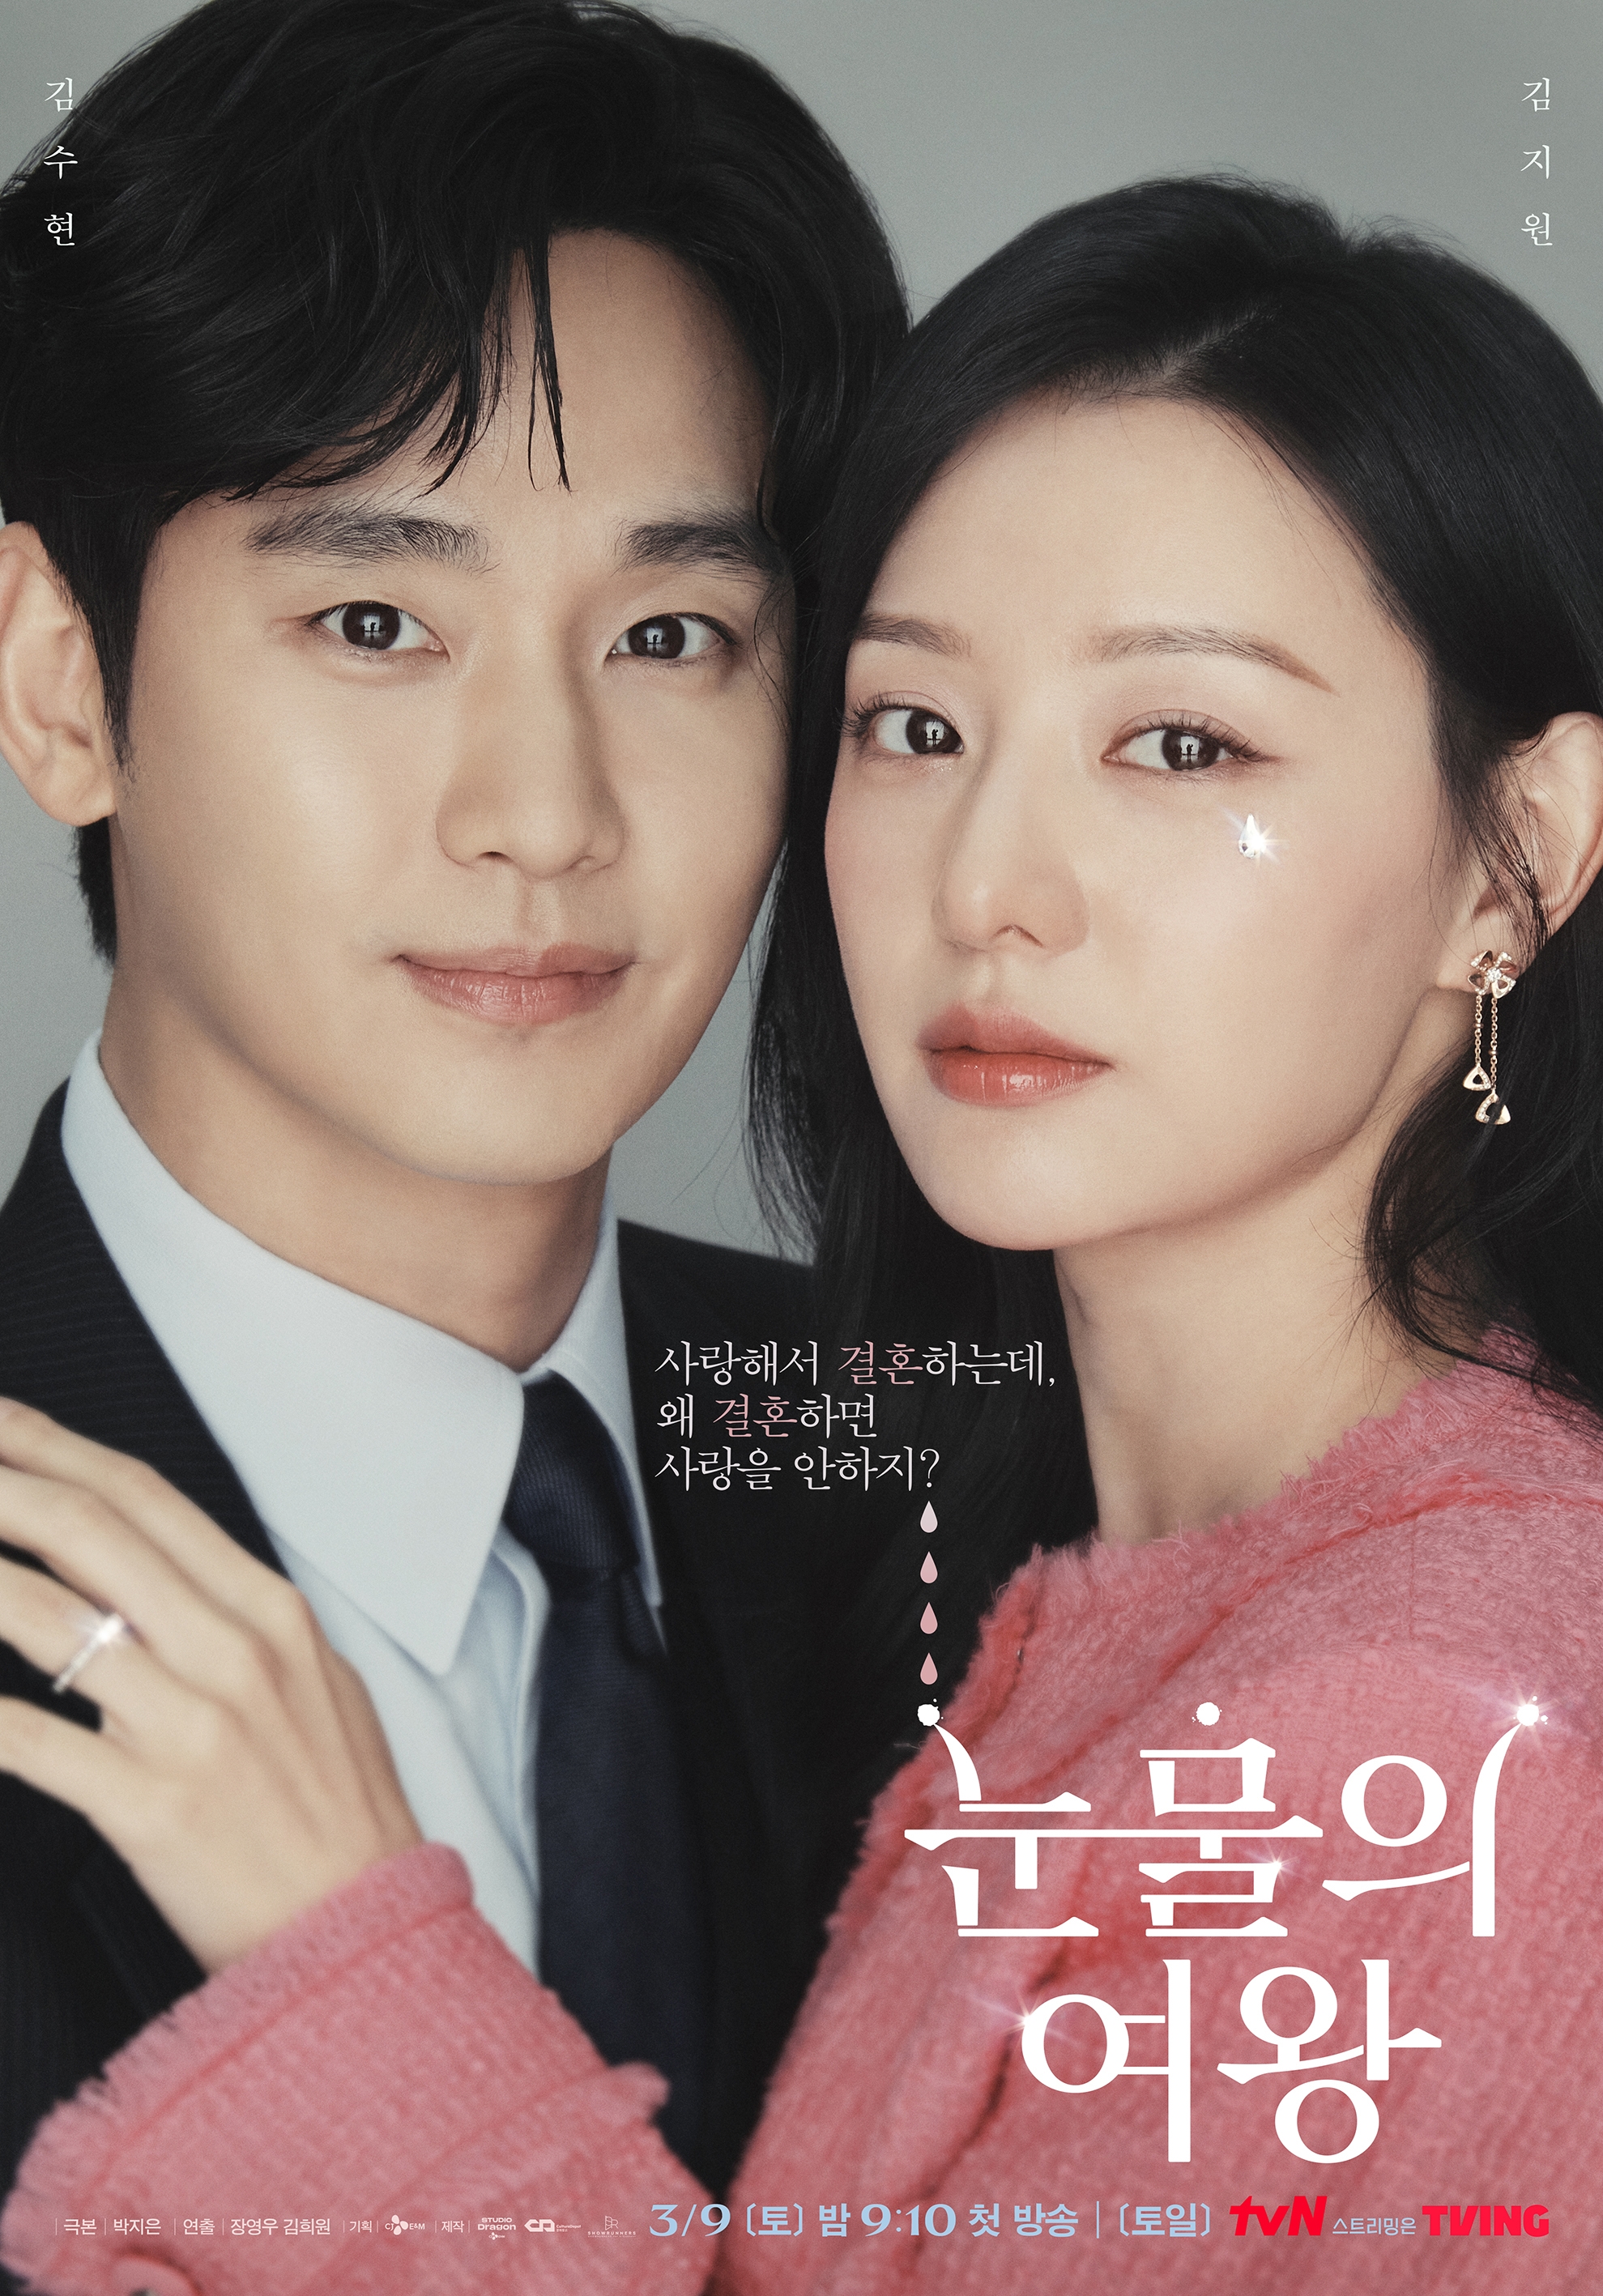  tvN ‘눈물의 여왕’